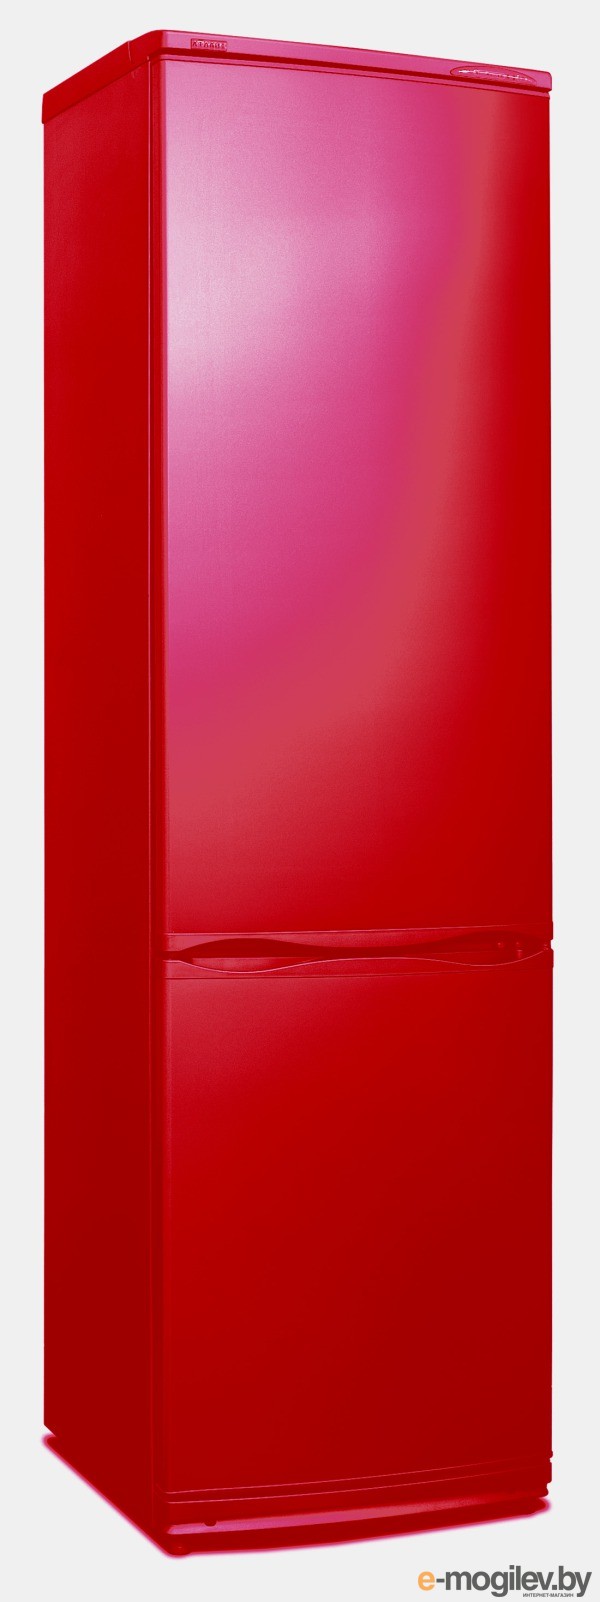 Морозильные камеры атлант красные. Атлант хм-6025-083. Холодильник Атлант рубиновый. Холодильник Атлант двухкамерный красный. Холодильник ATLANT XM-6025-083 рубиновый цвет.